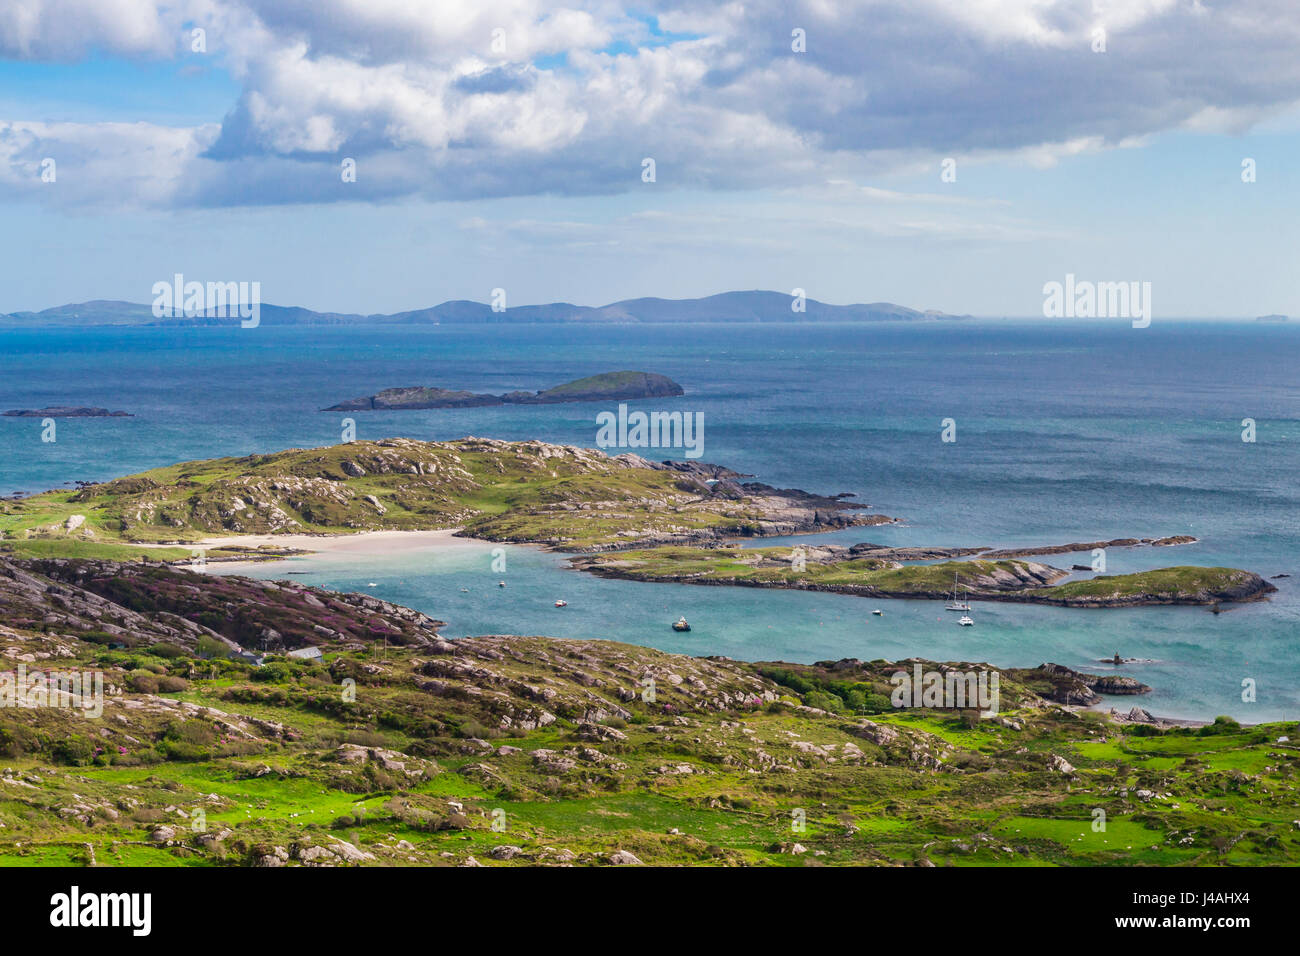 Vista panoramica sulla baia di Bealtra e Abbazia isola sulla costa sud della penisola di Iveragh, villaggi vicini e Il Derrynane Caherdaniel, nella contea di Kerry, Irlanda Foto Stock